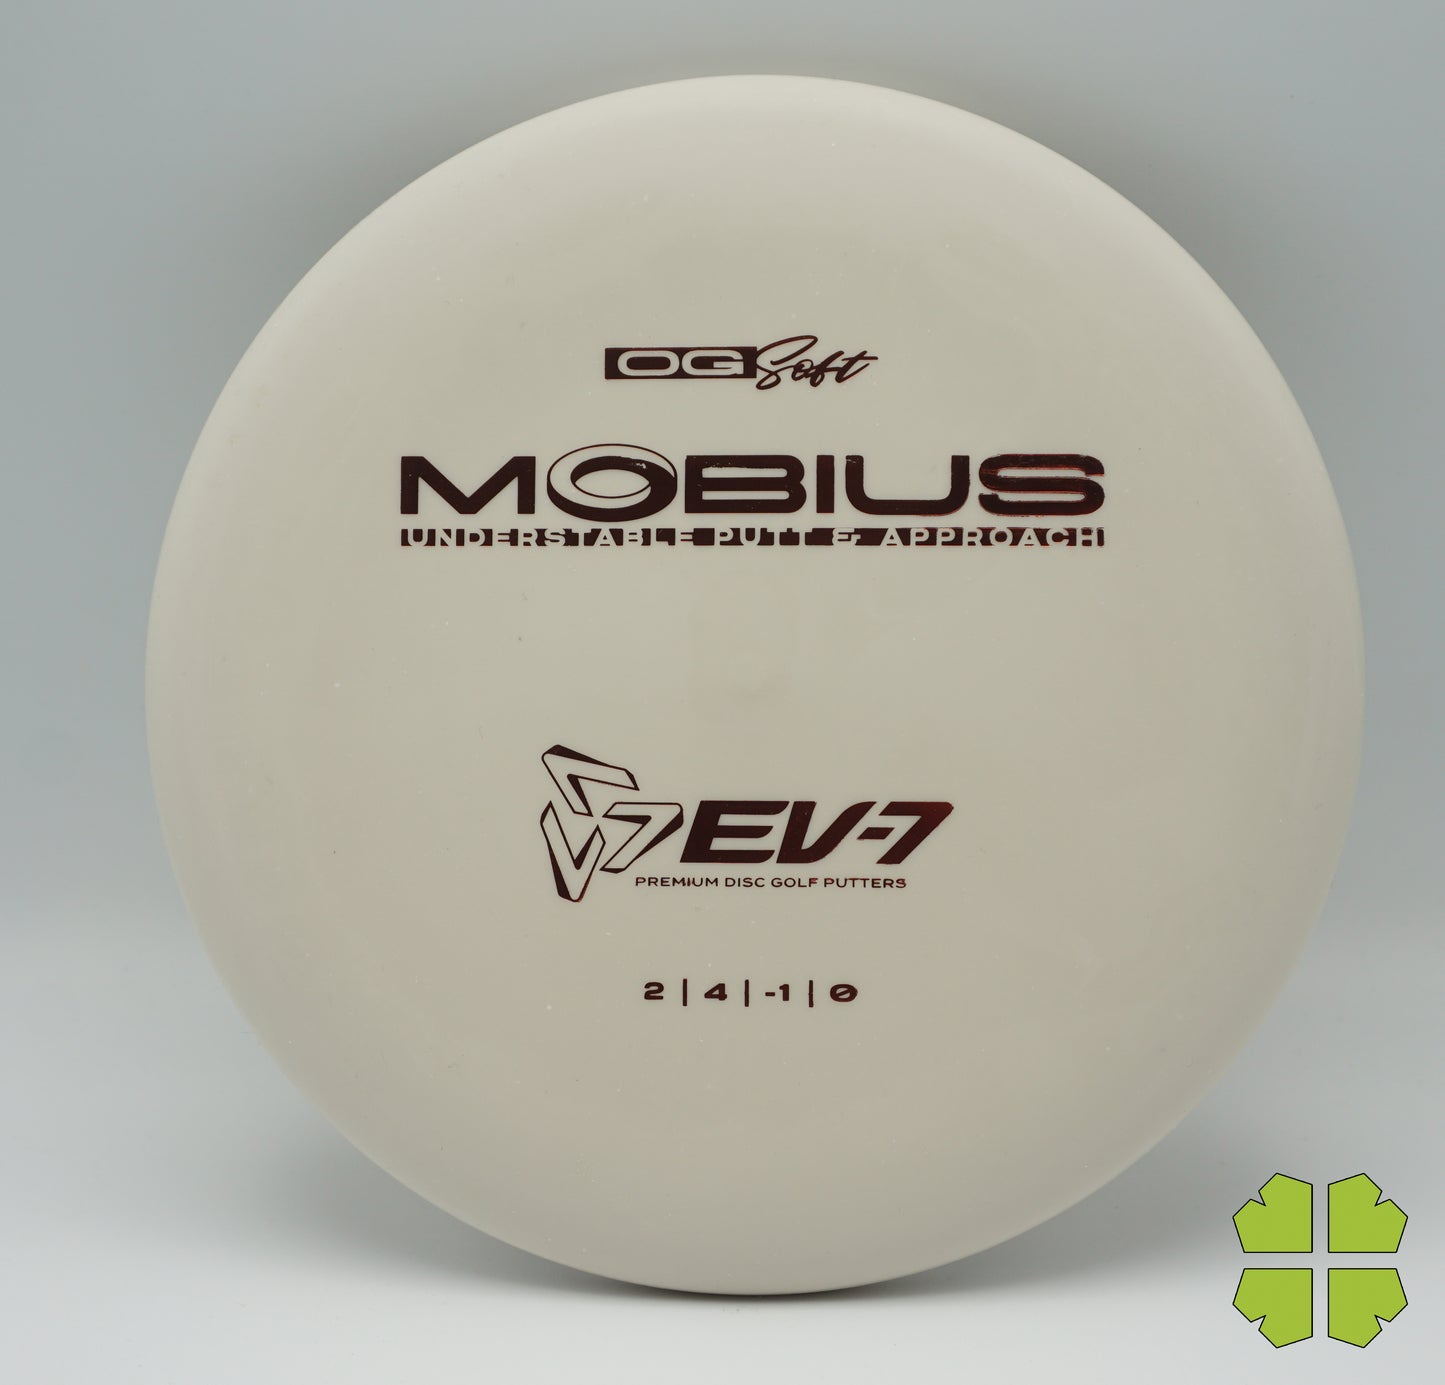 EV-7 Mobius OG Soft 174g